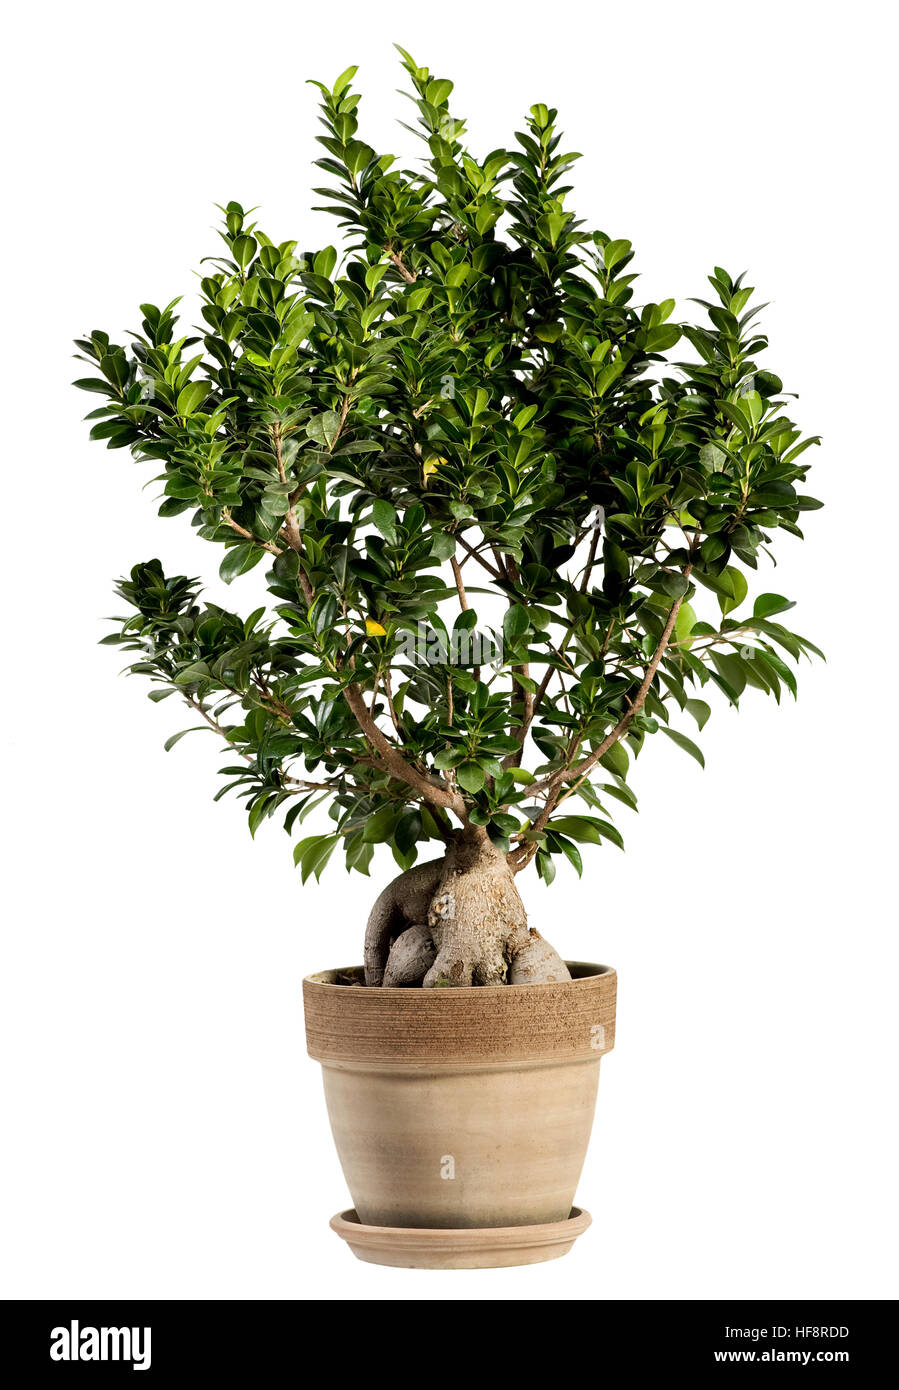 Frischen Look von Ginseng Ficus Bonsai-Baum auf normalen braunen Topf.  Isolated on White Background Stockfotografie - Alamy